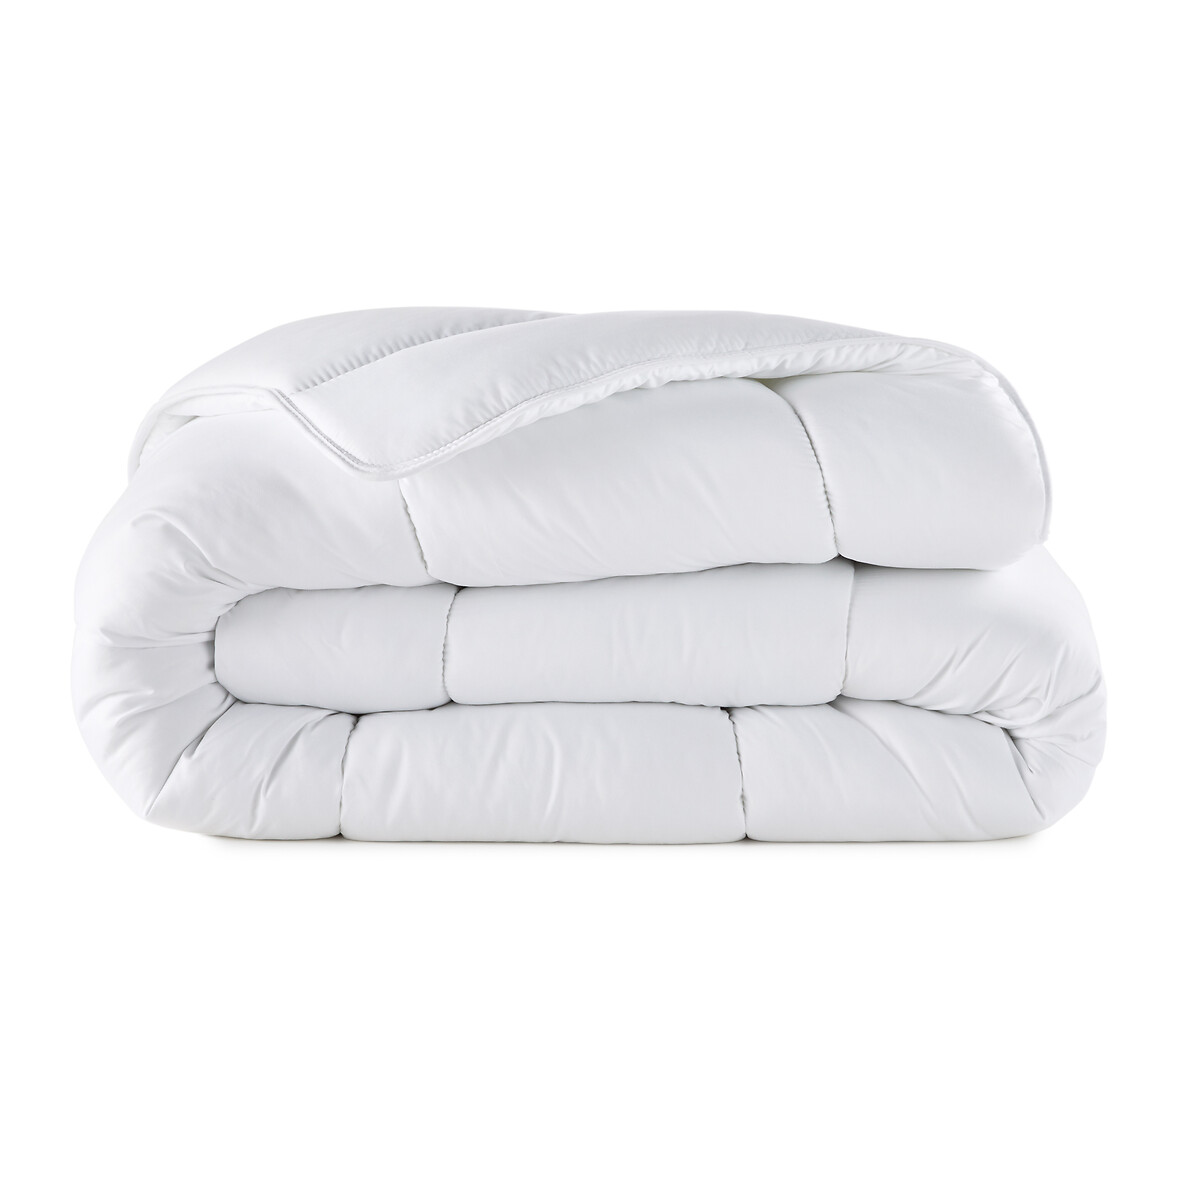 Одеяло La Redoute Синтетическое с обработкой BI-OME  гм 260 x 240 см белый, размер 260 x 240 см - фото 2